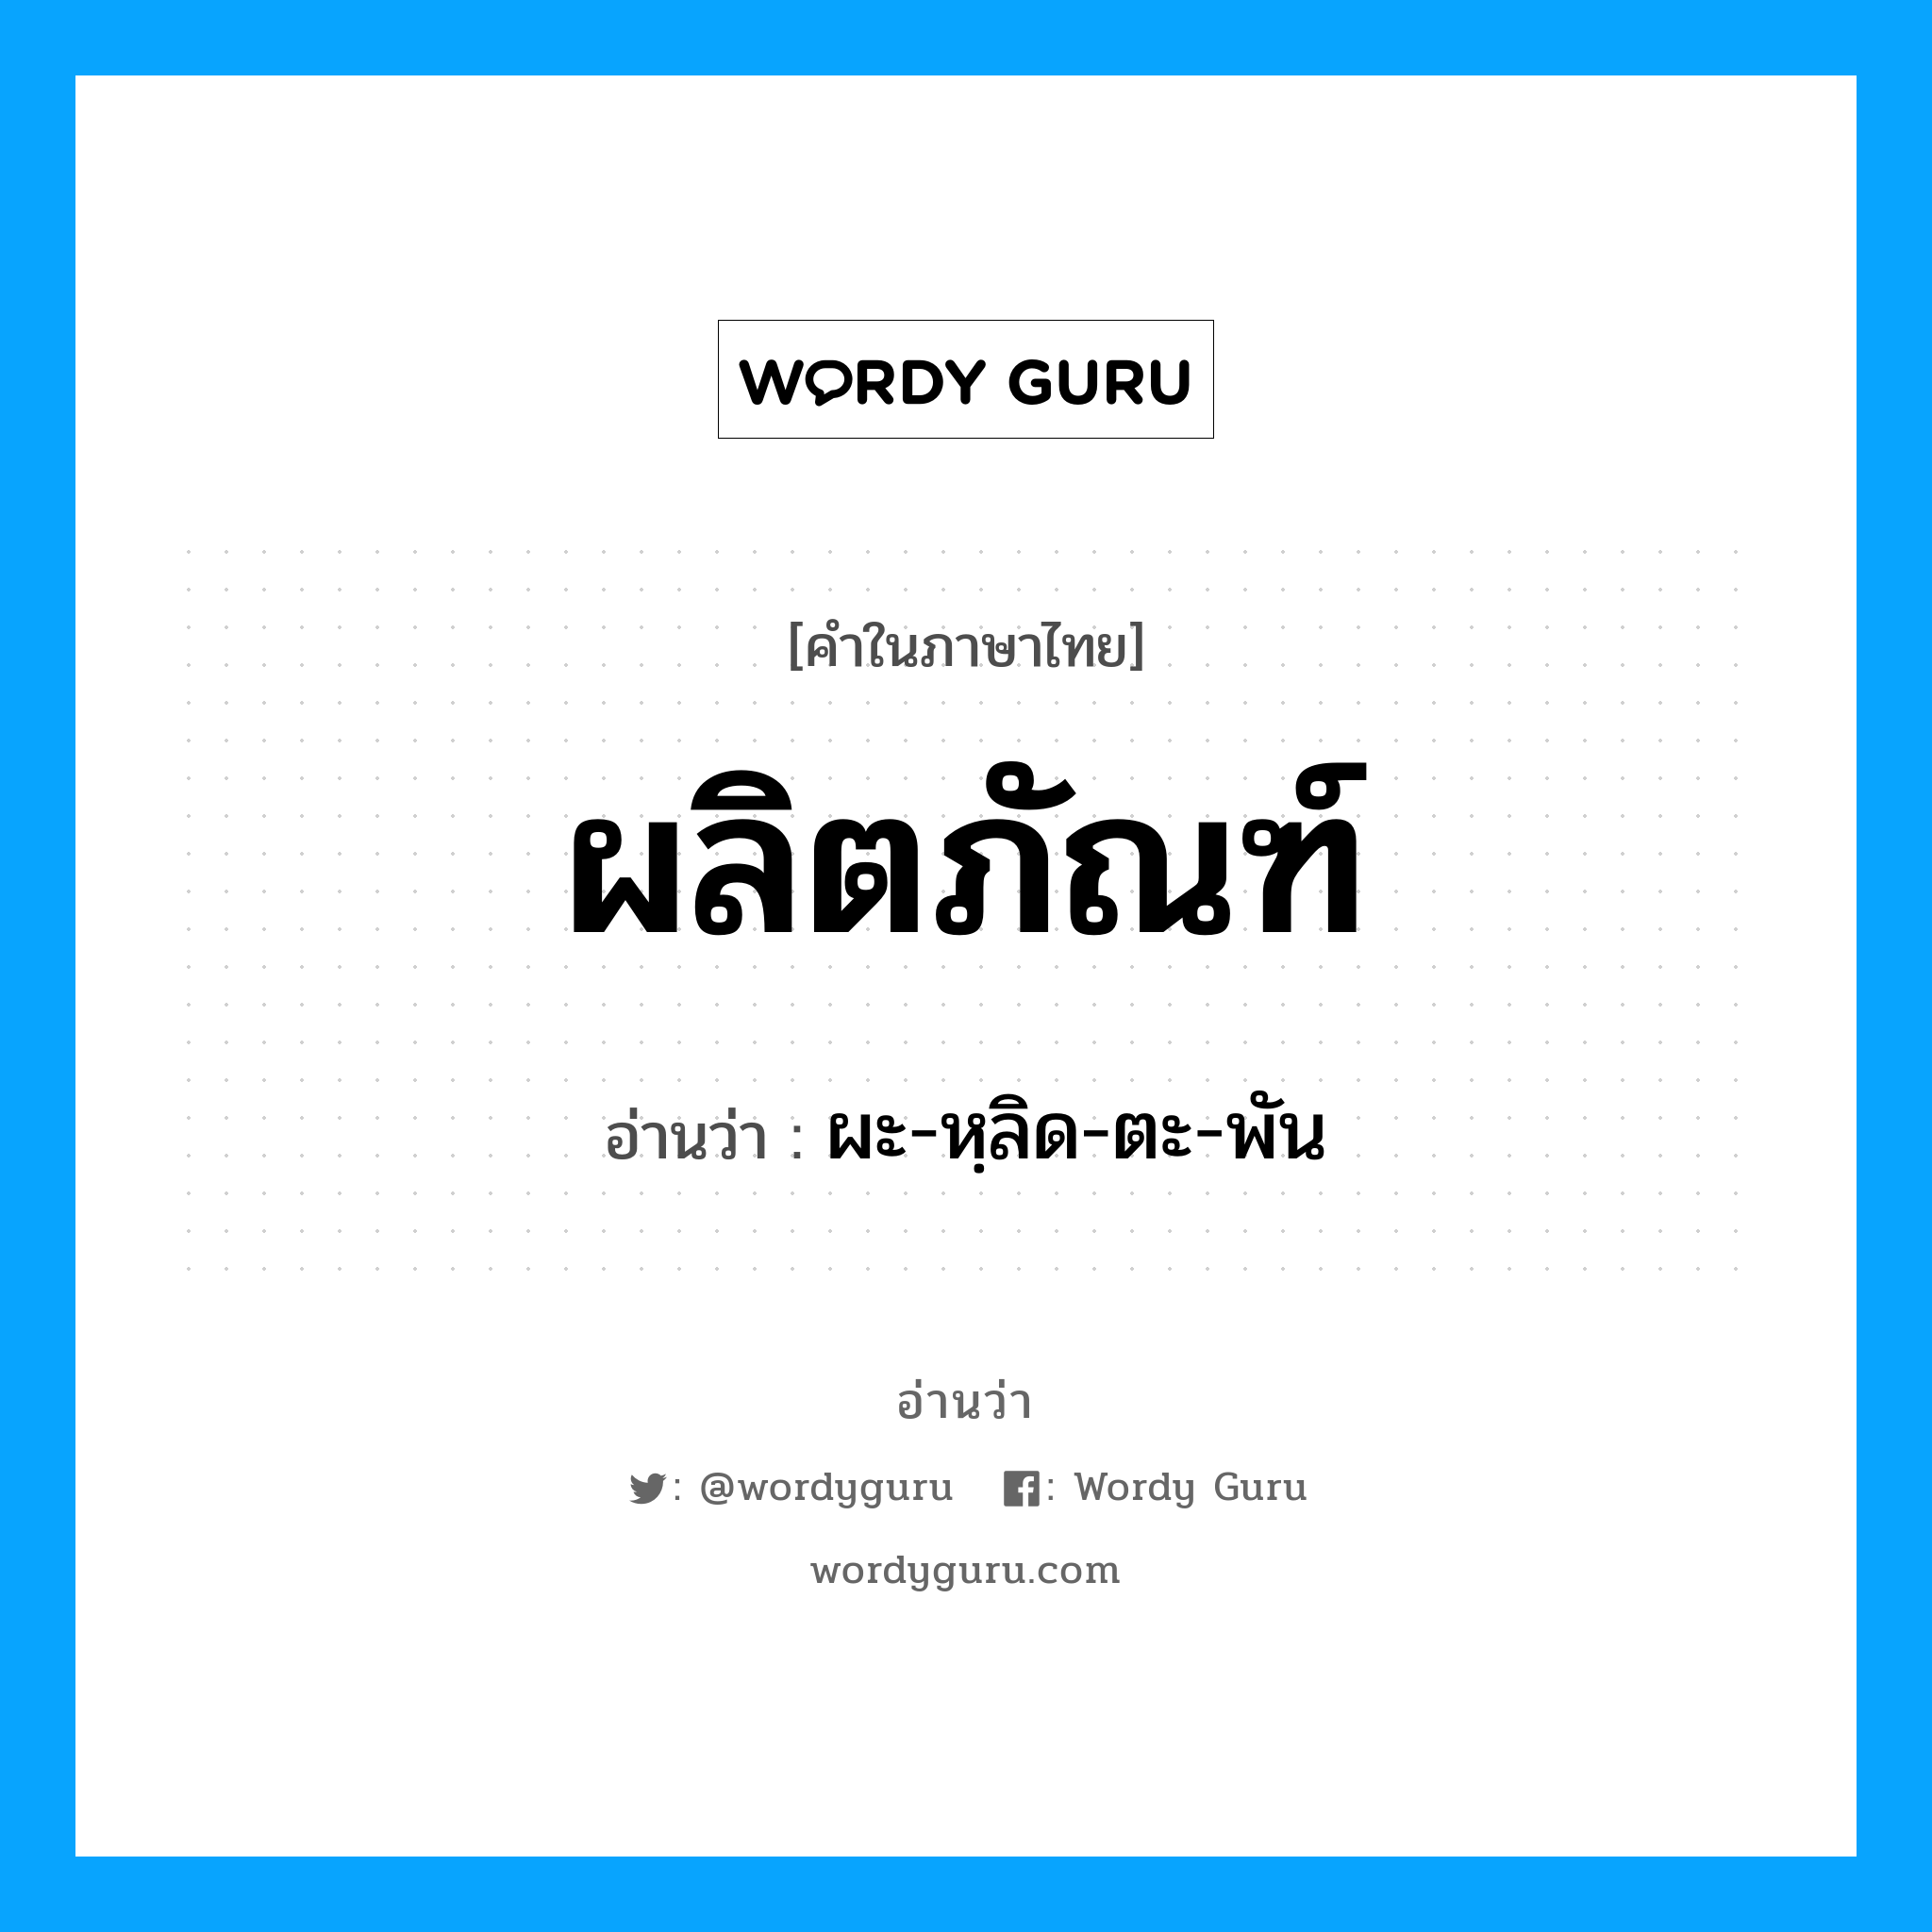 ผะ-หฺลิด-ตะ-พัน เป็นคำอ่านของคำไหน?, คำในภาษาไทย ผะ-หฺลิด-ตะ-พัน อ่านว่า ผลิตภัณฑ์